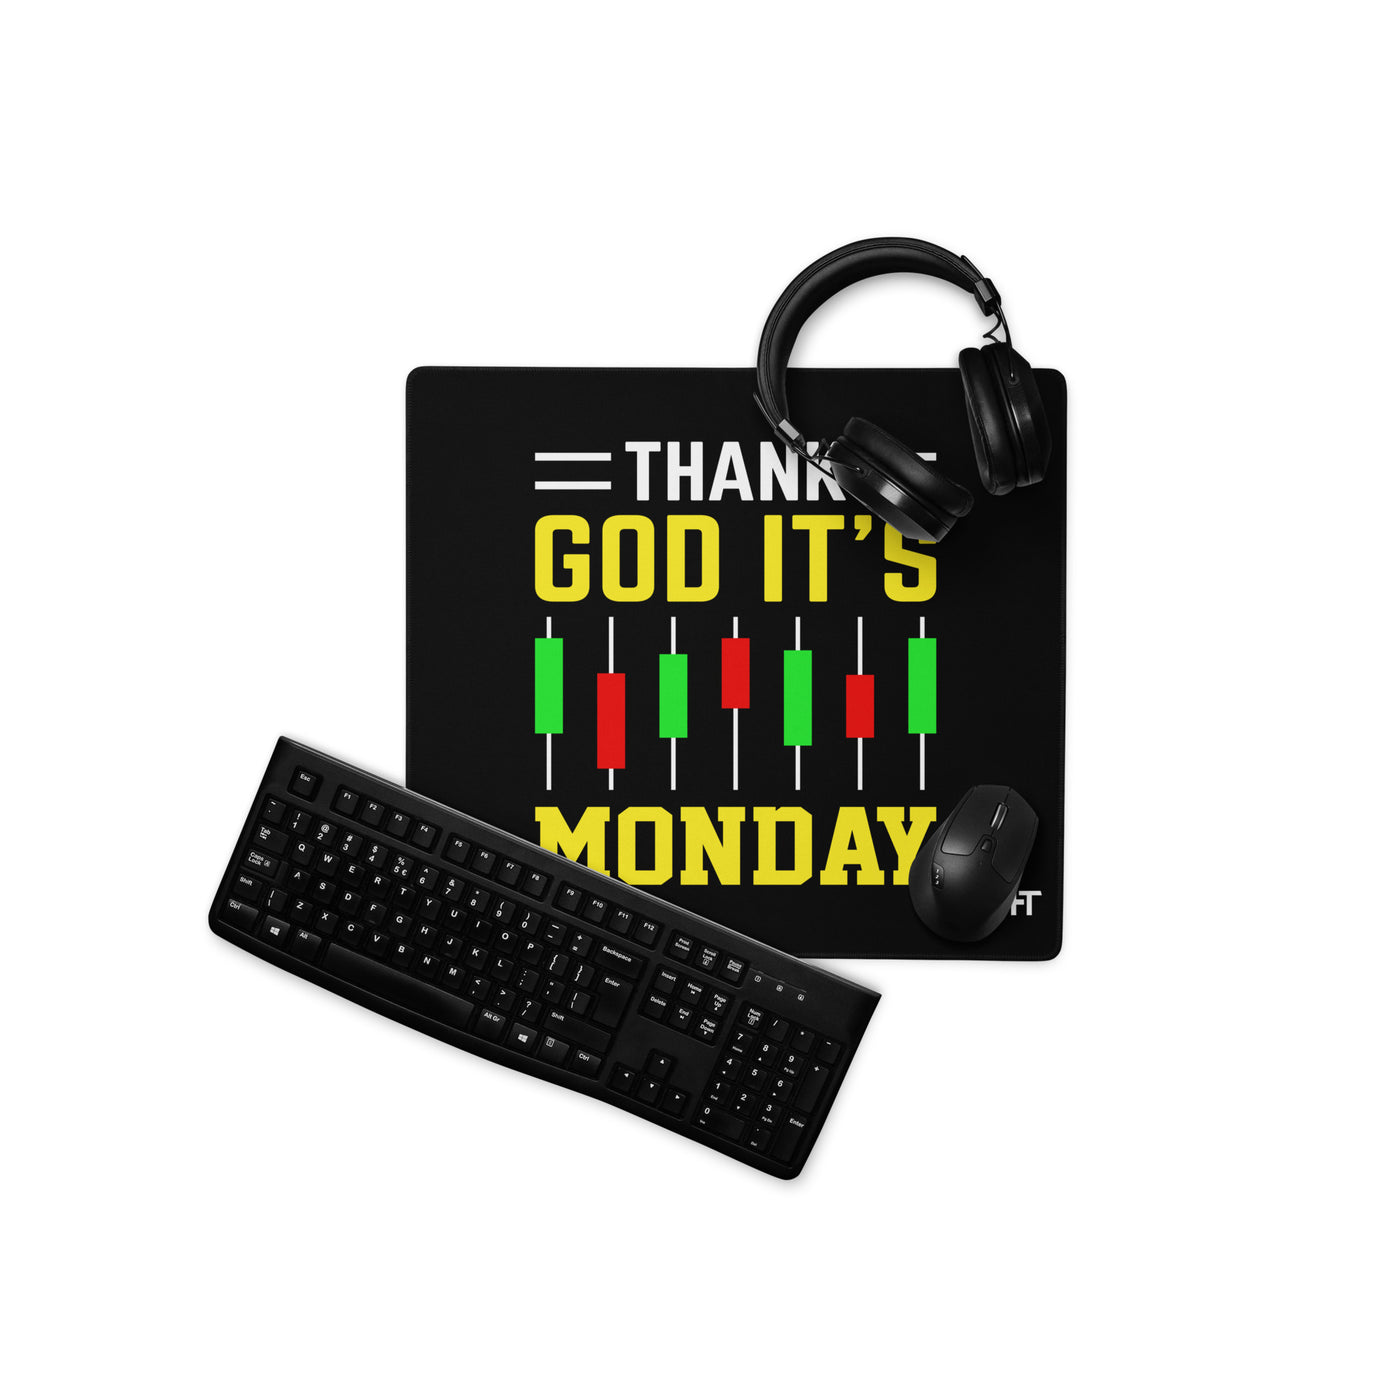 Thank God! It's Monday - Desk Mat